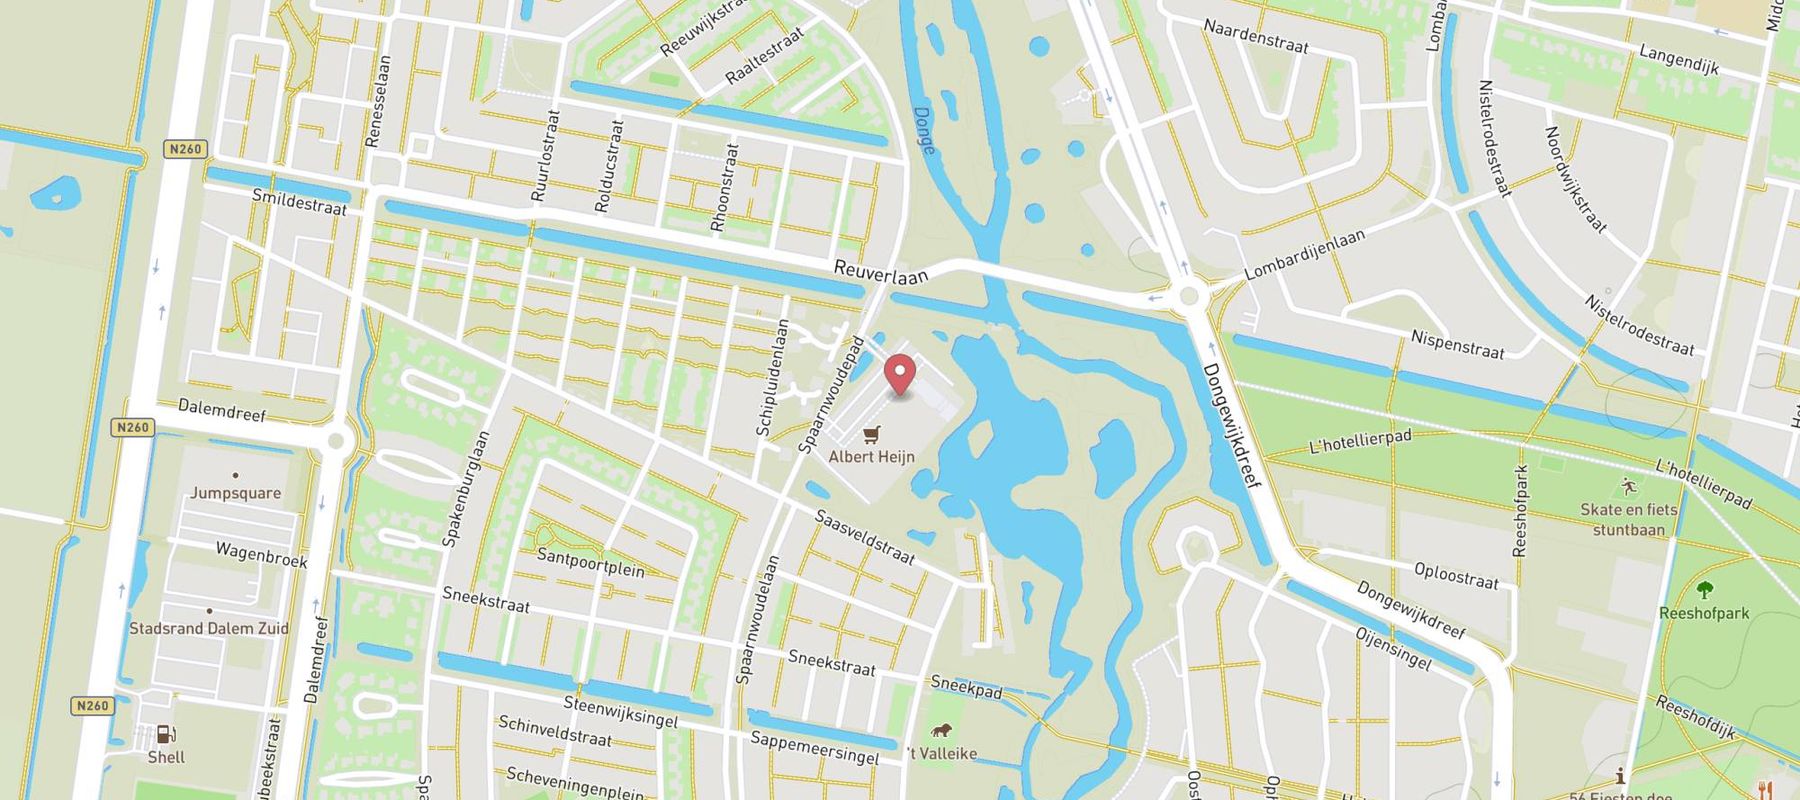 Pearle Opticiens Tilburg - Dalempromenade map